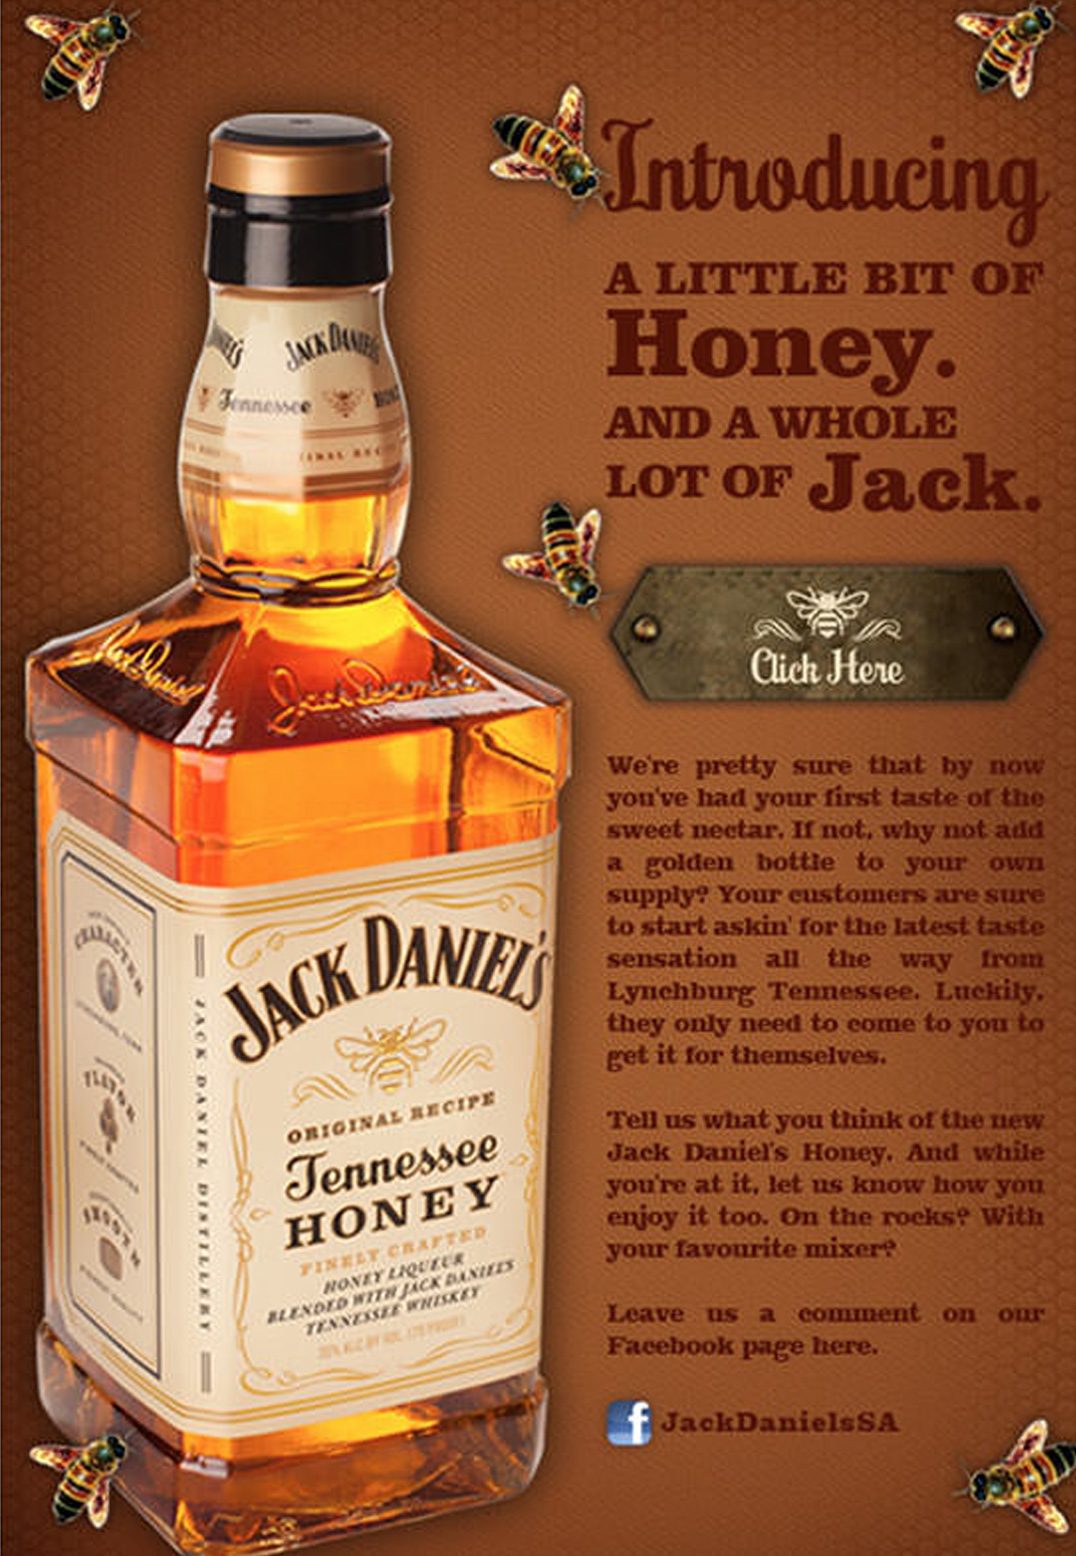 Jack Daniels ad example